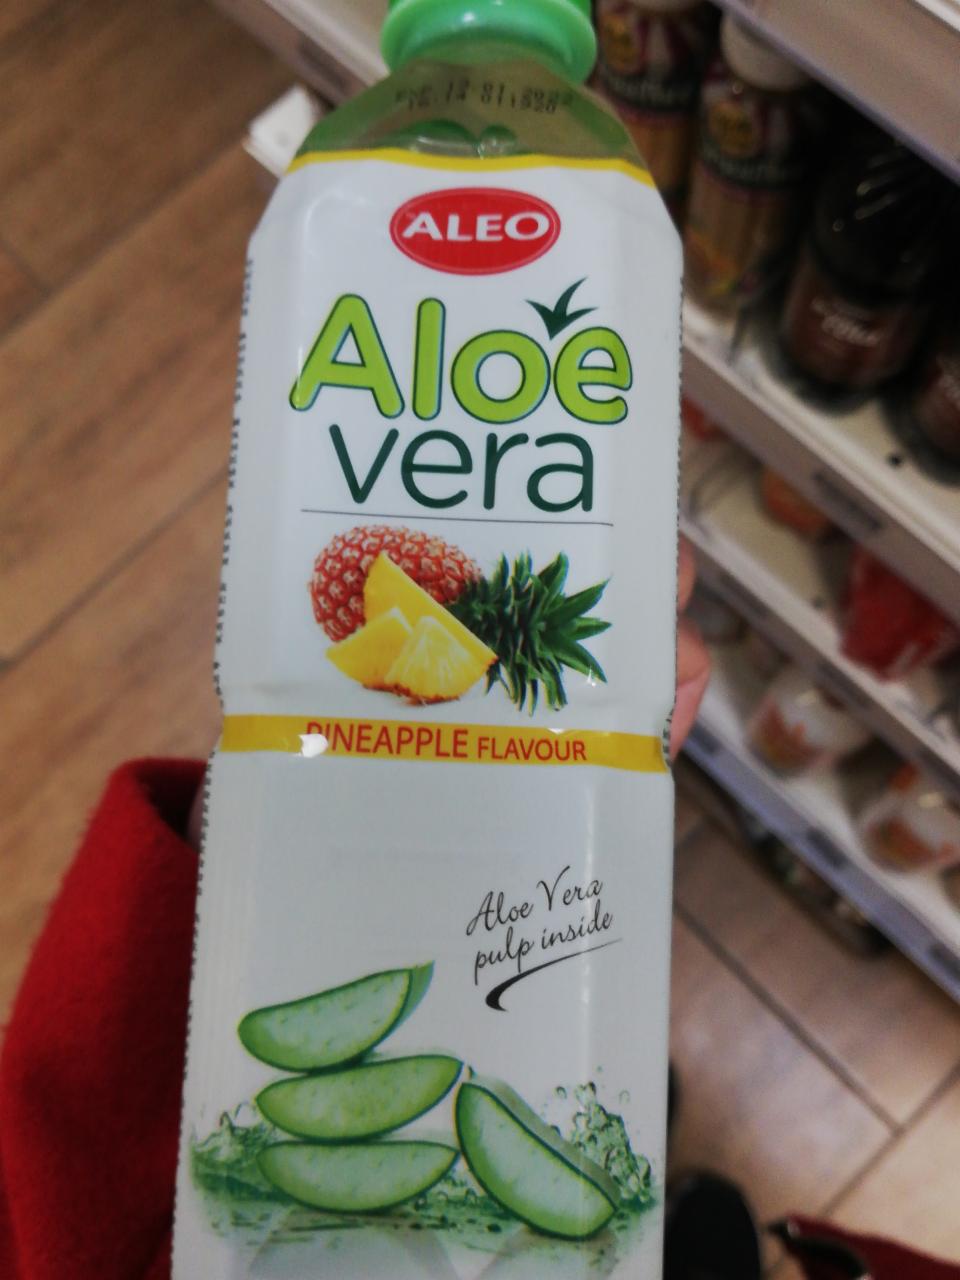 Képek - Aloe Vera ital ananász ízű Aleo